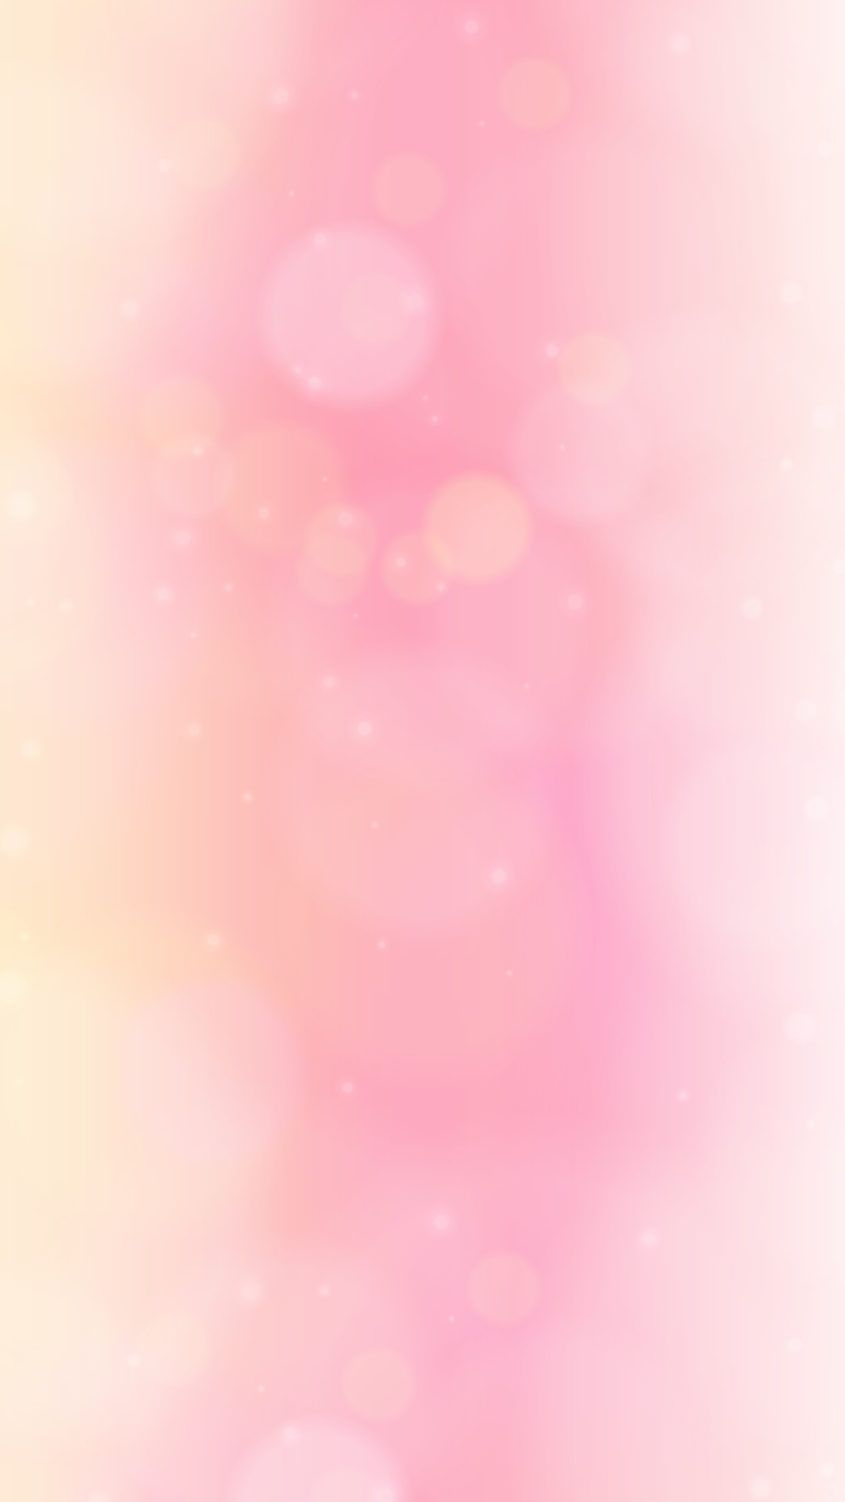 Decoración: 44 fondos de pantalla de color rosa suave en Wallpaperplay. Rosa claro